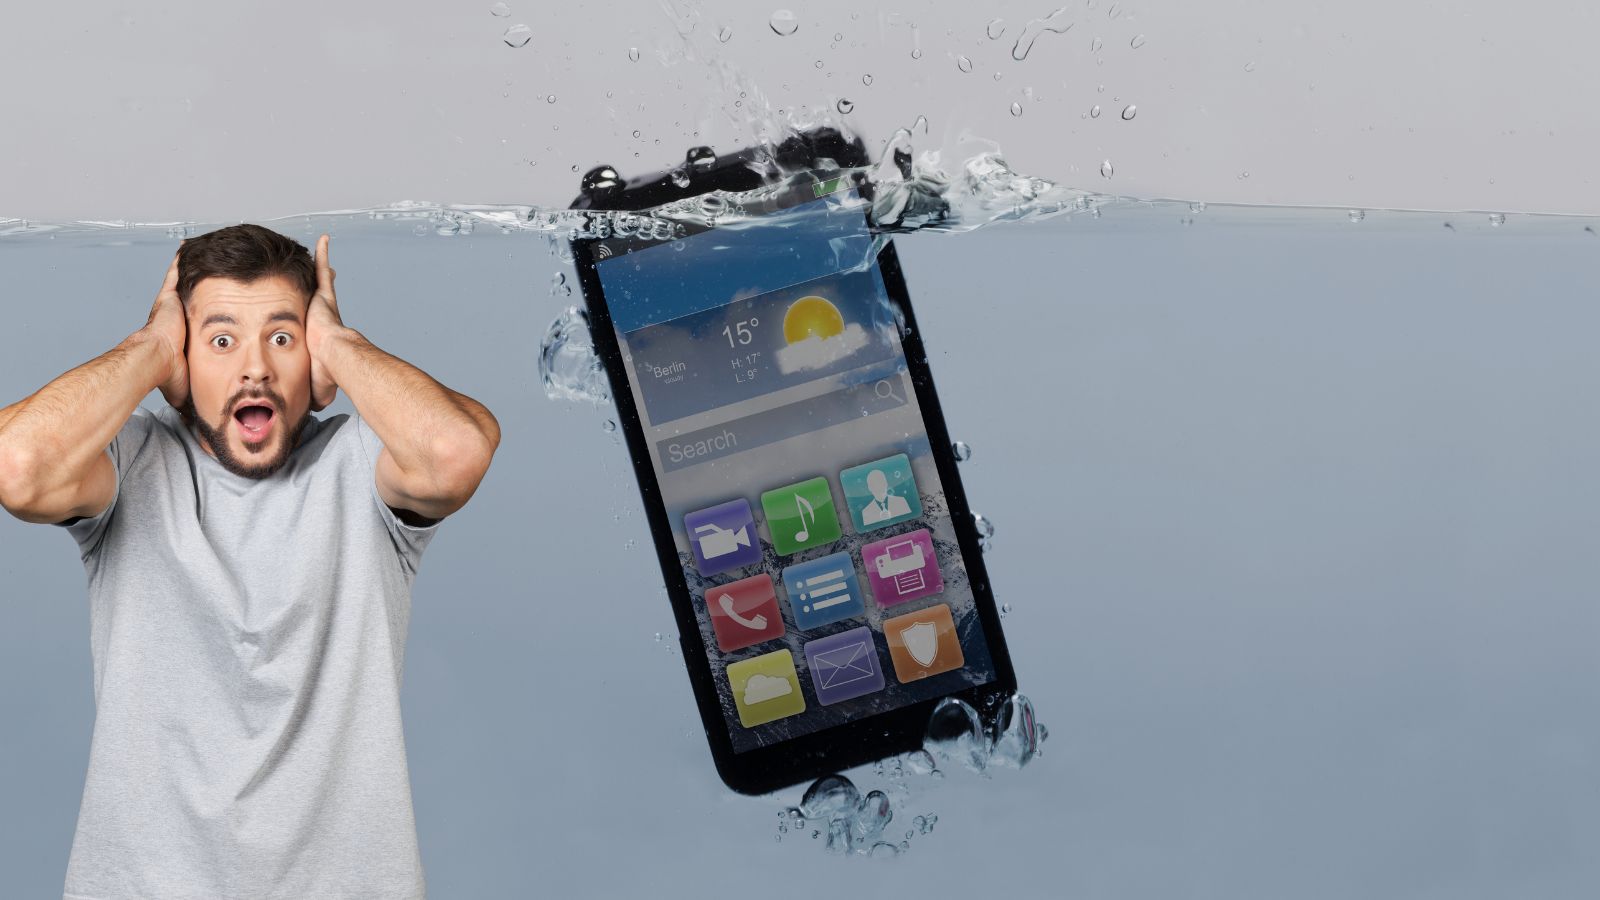 Cellulare cade in acqua: cosa fare? Attenzione ai falsi miti 